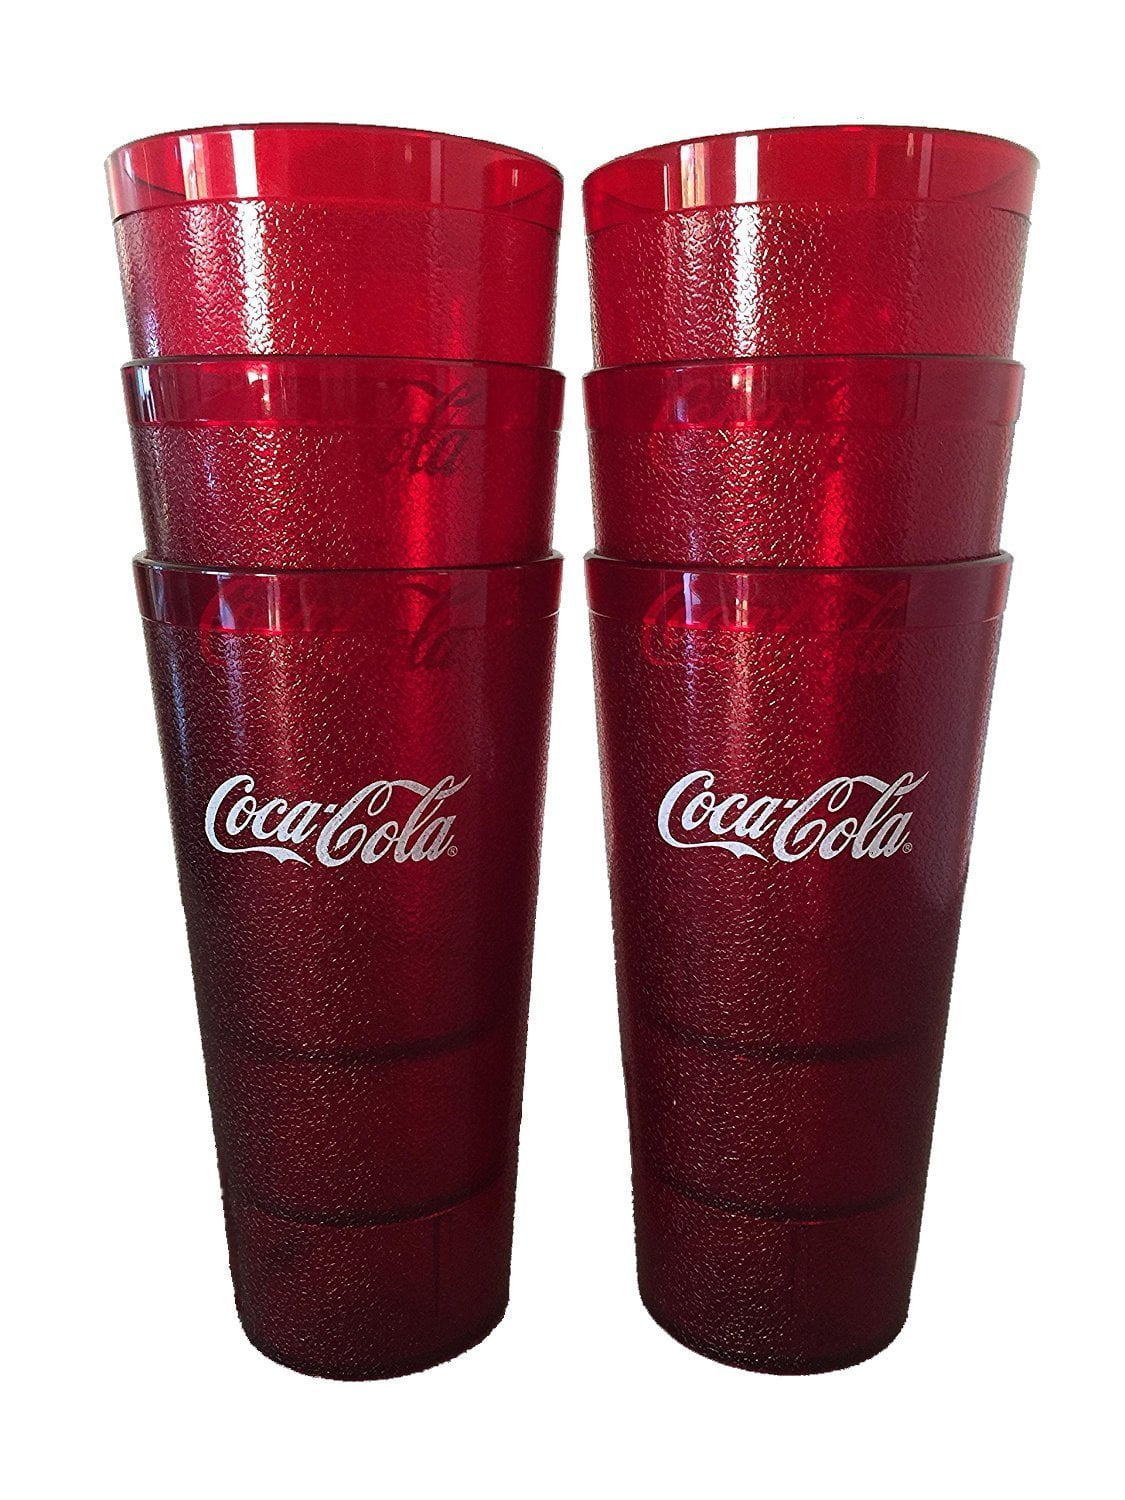 Coca Cola Coke Mug Coca Cola Mug Coke Green Tinted Glass Mug with Handle